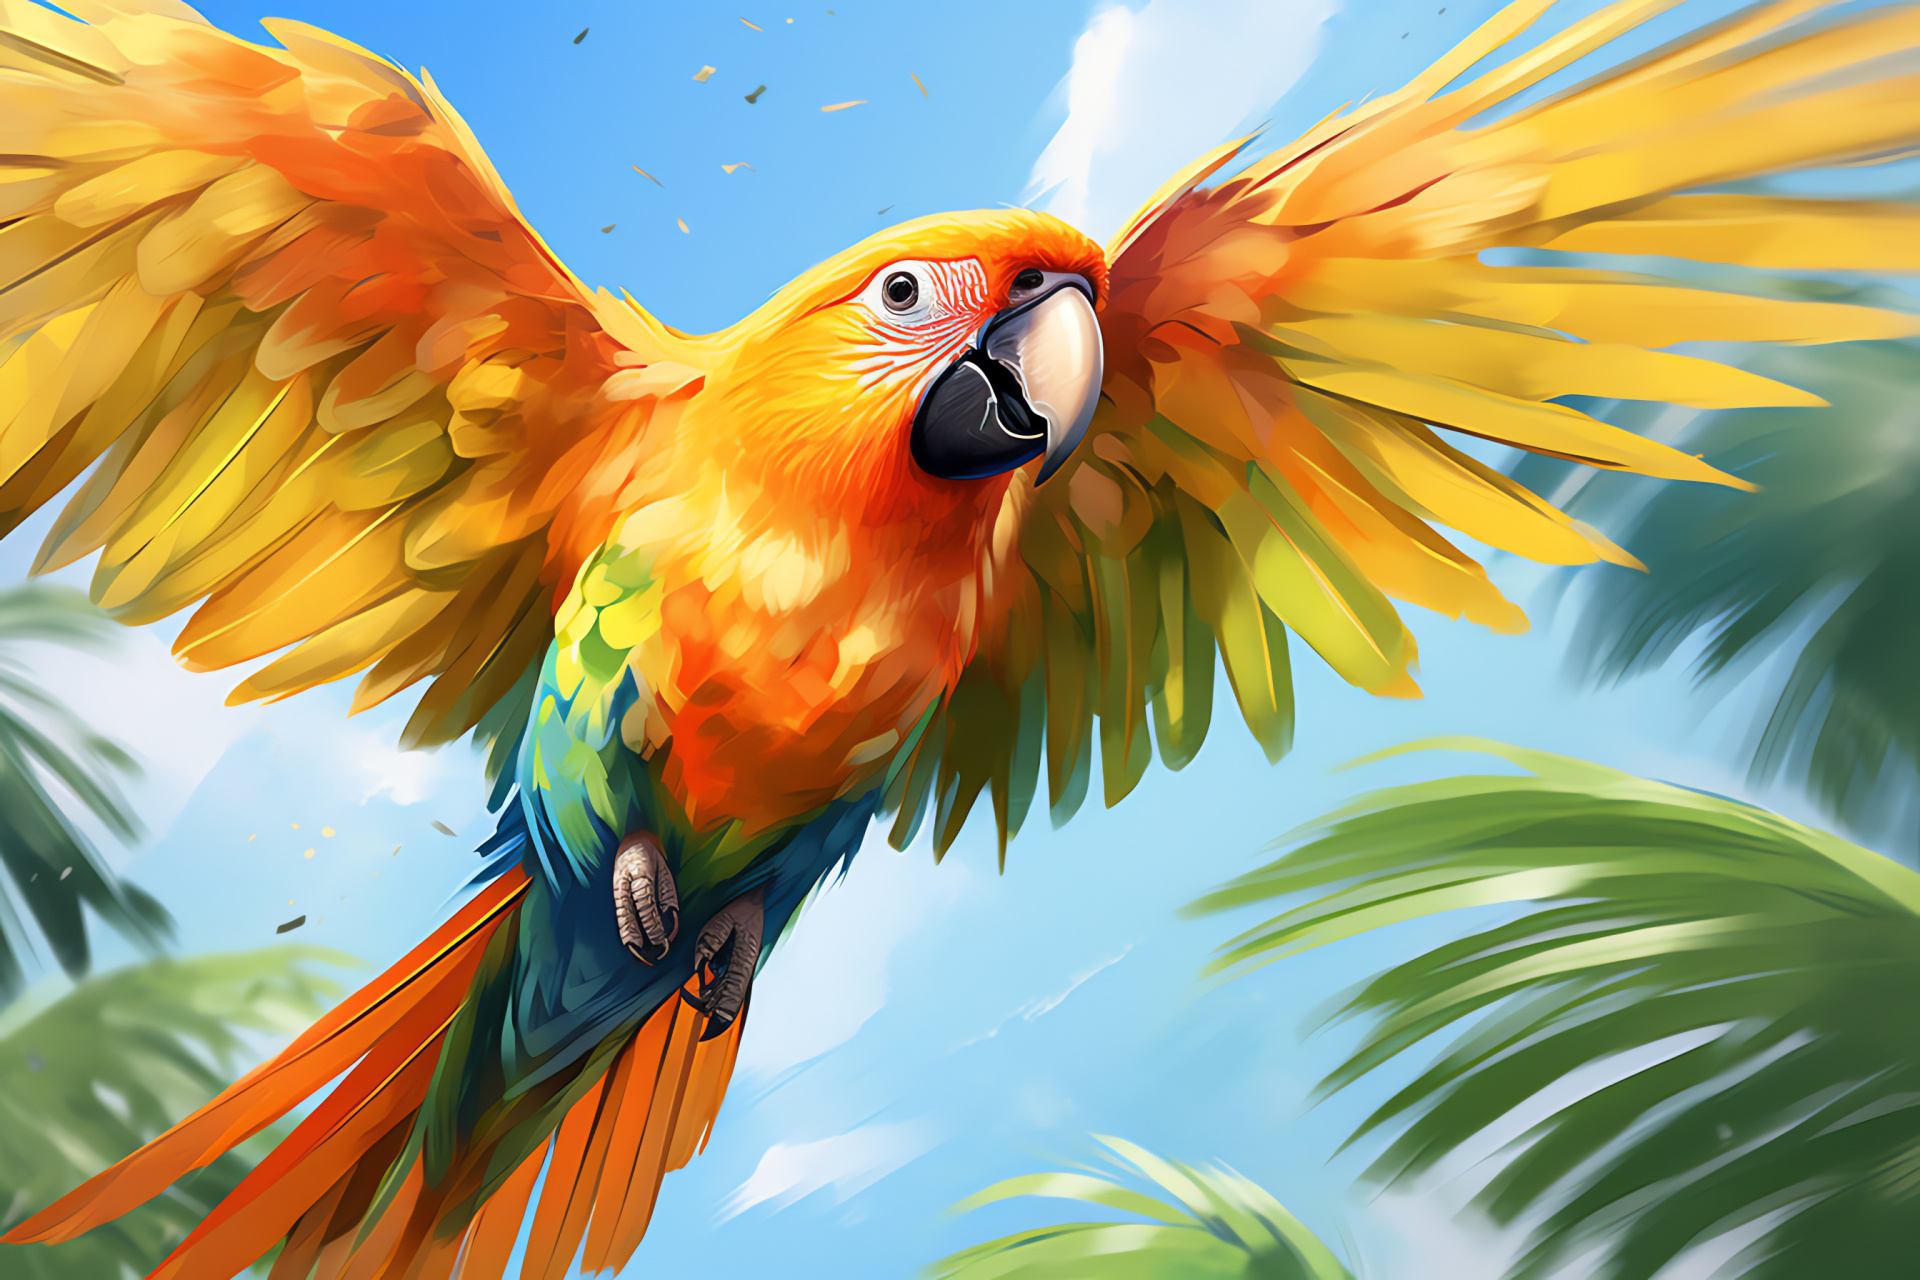 Sun Conure parrot species, Citrus-hued plumage, Dark-eyed tropical bird, Rainforest demeanor, Avian beauty, HD Desktop Wallpaper